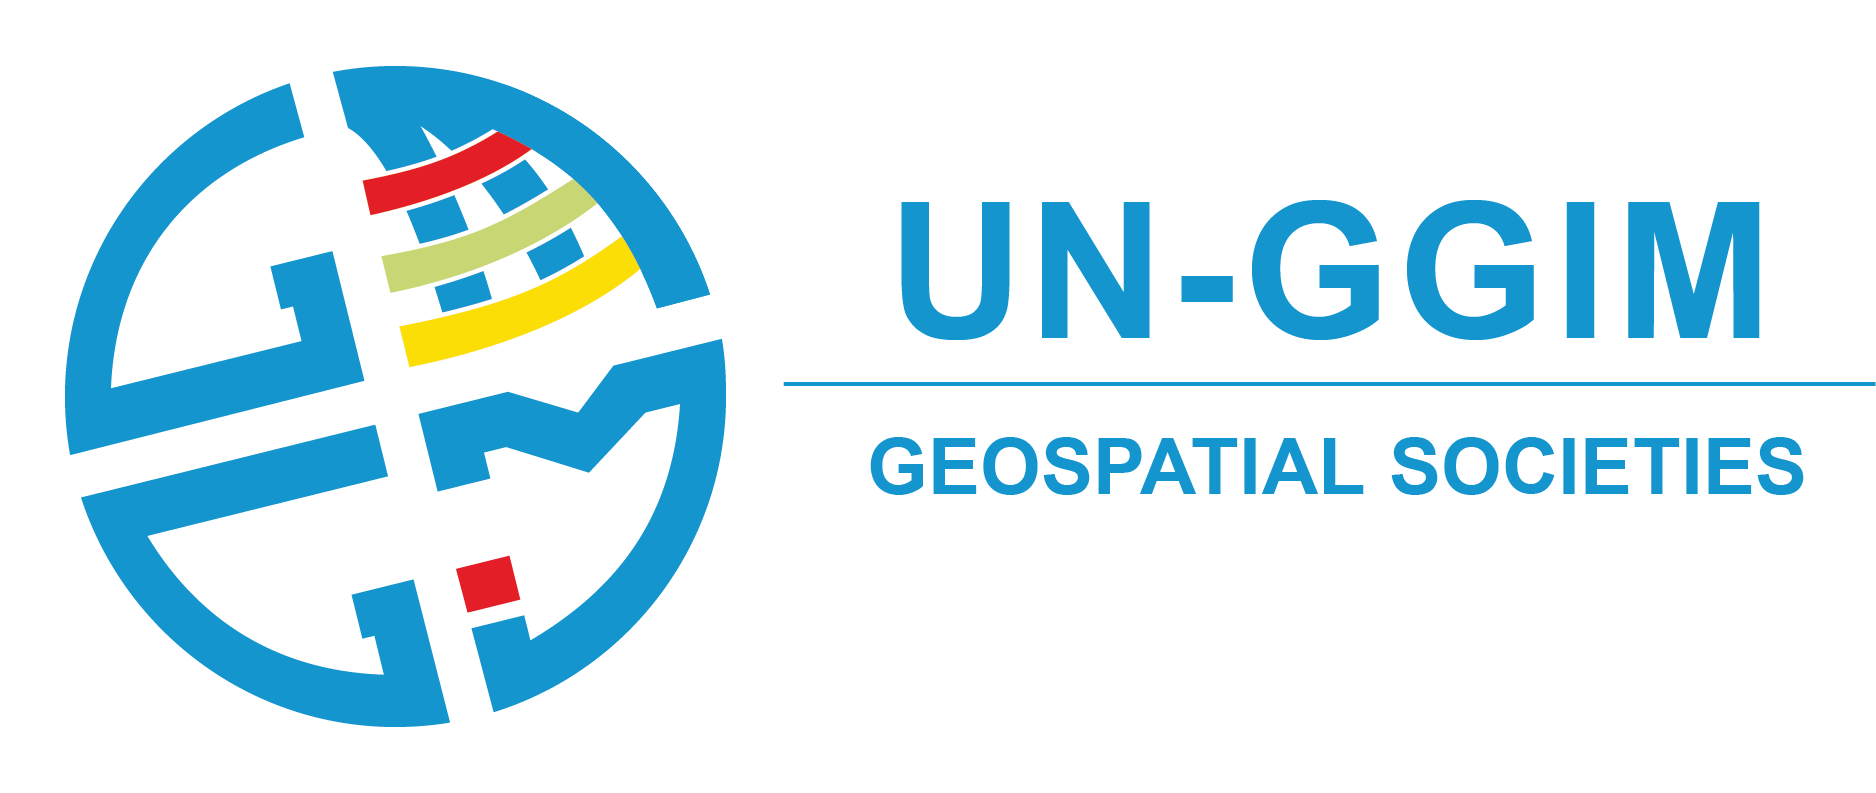 UN-GGIM Geospatial Societies